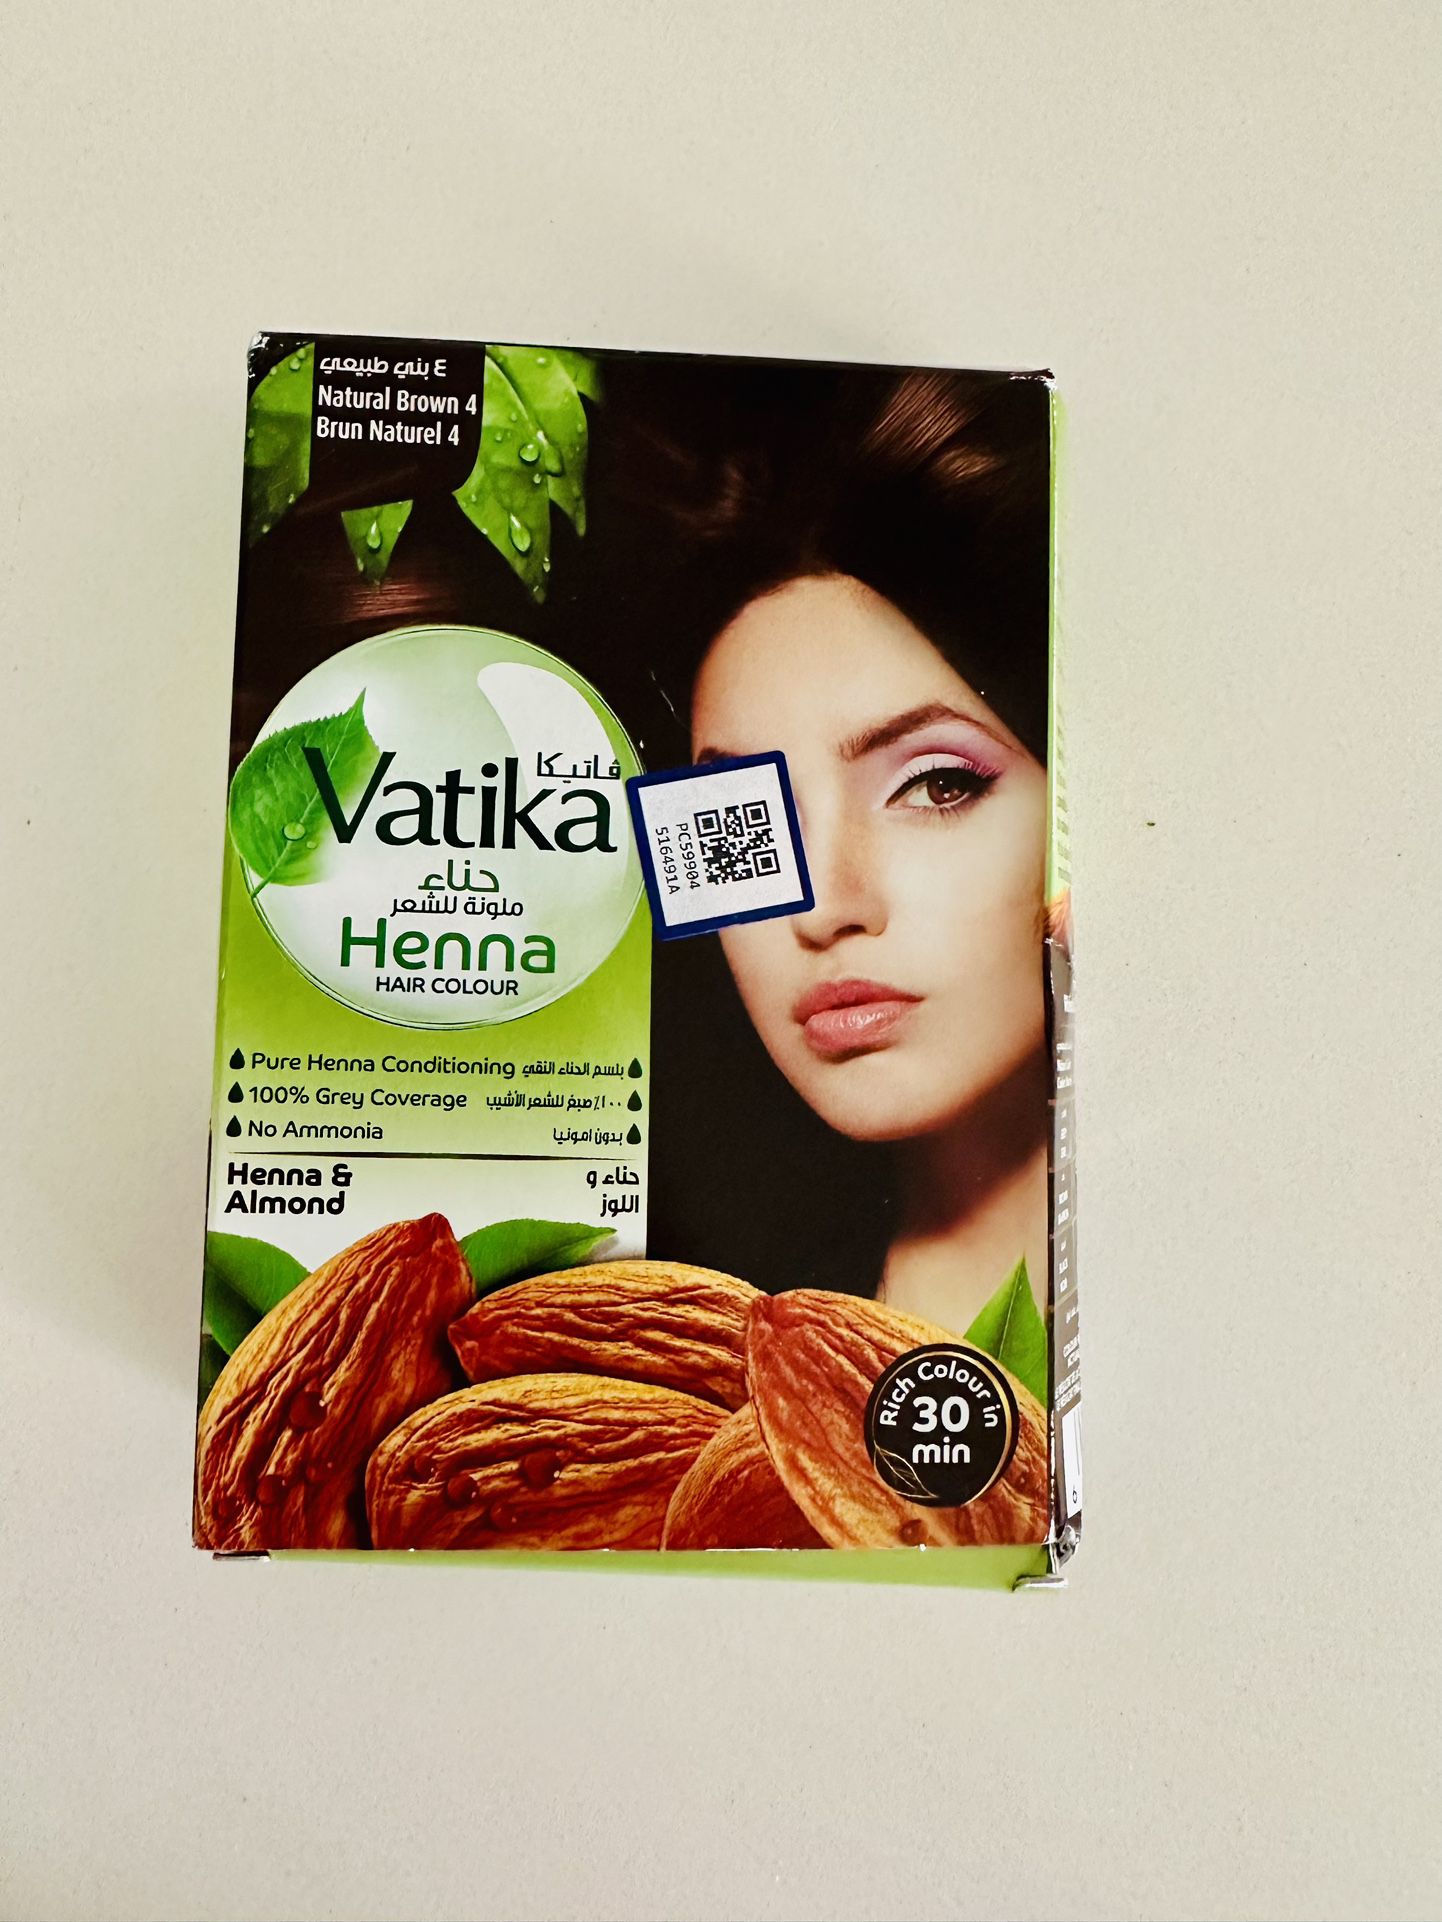 Vatika Henna Hair Color-Ammonia free-Natural Brown